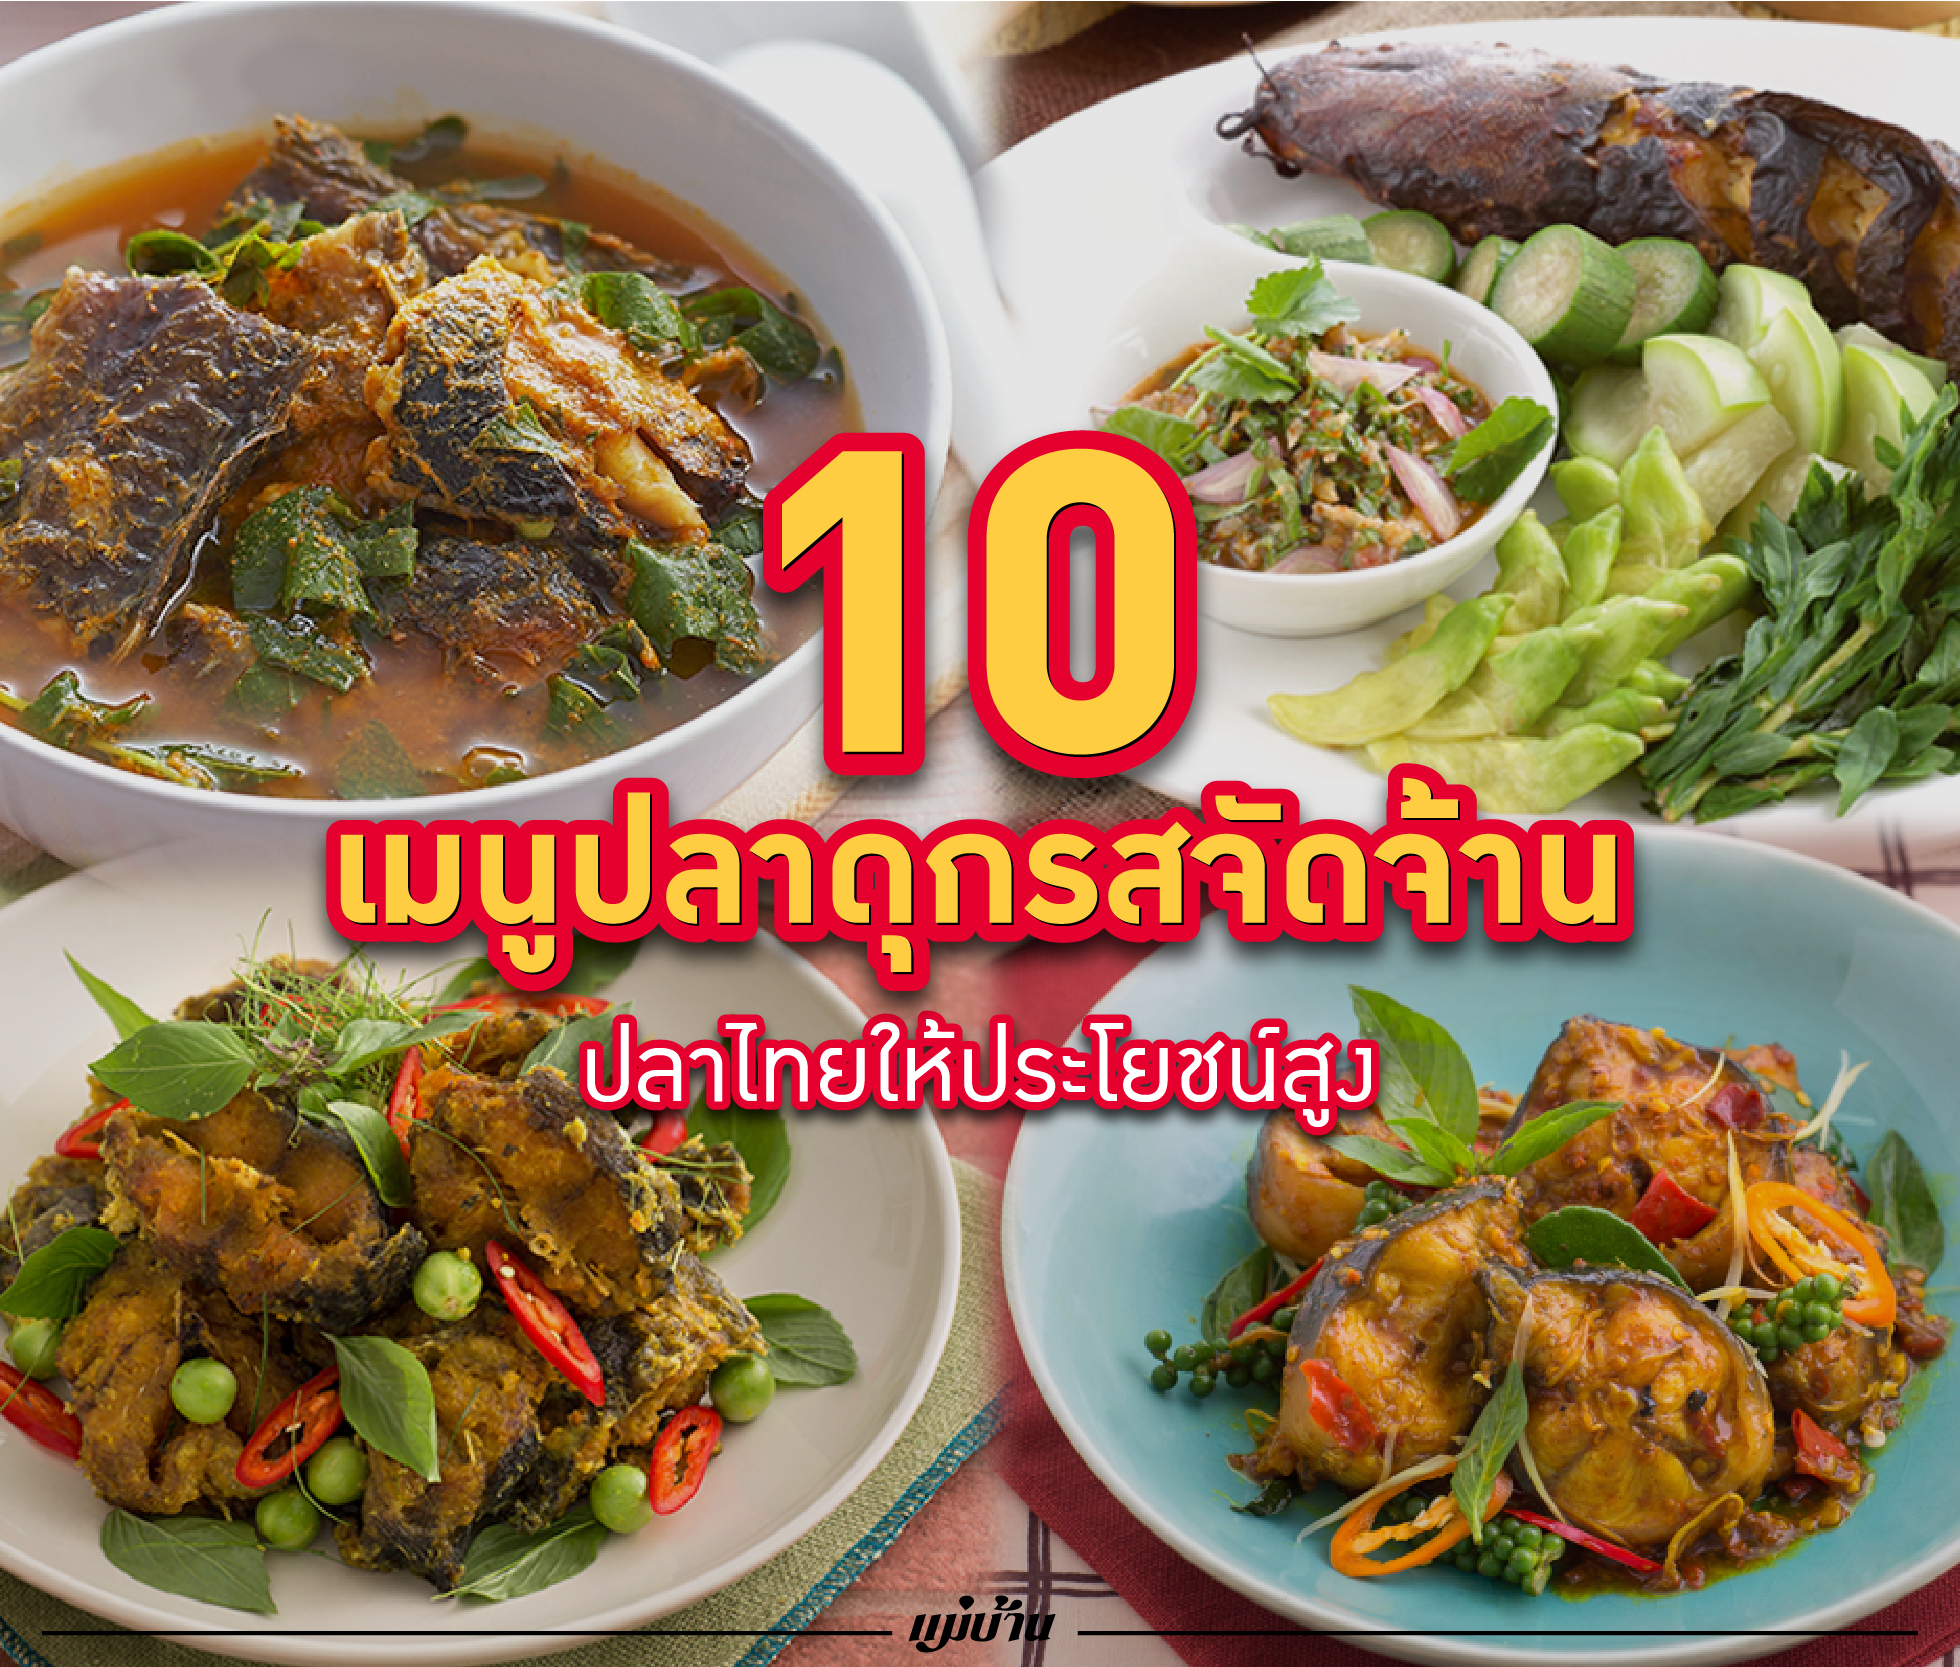 10 เมนูปลาดุกรสจัดจ้าน ปลาไทยให้ประโยชน์สูง สำนักพิมพ์แม่บ้าน